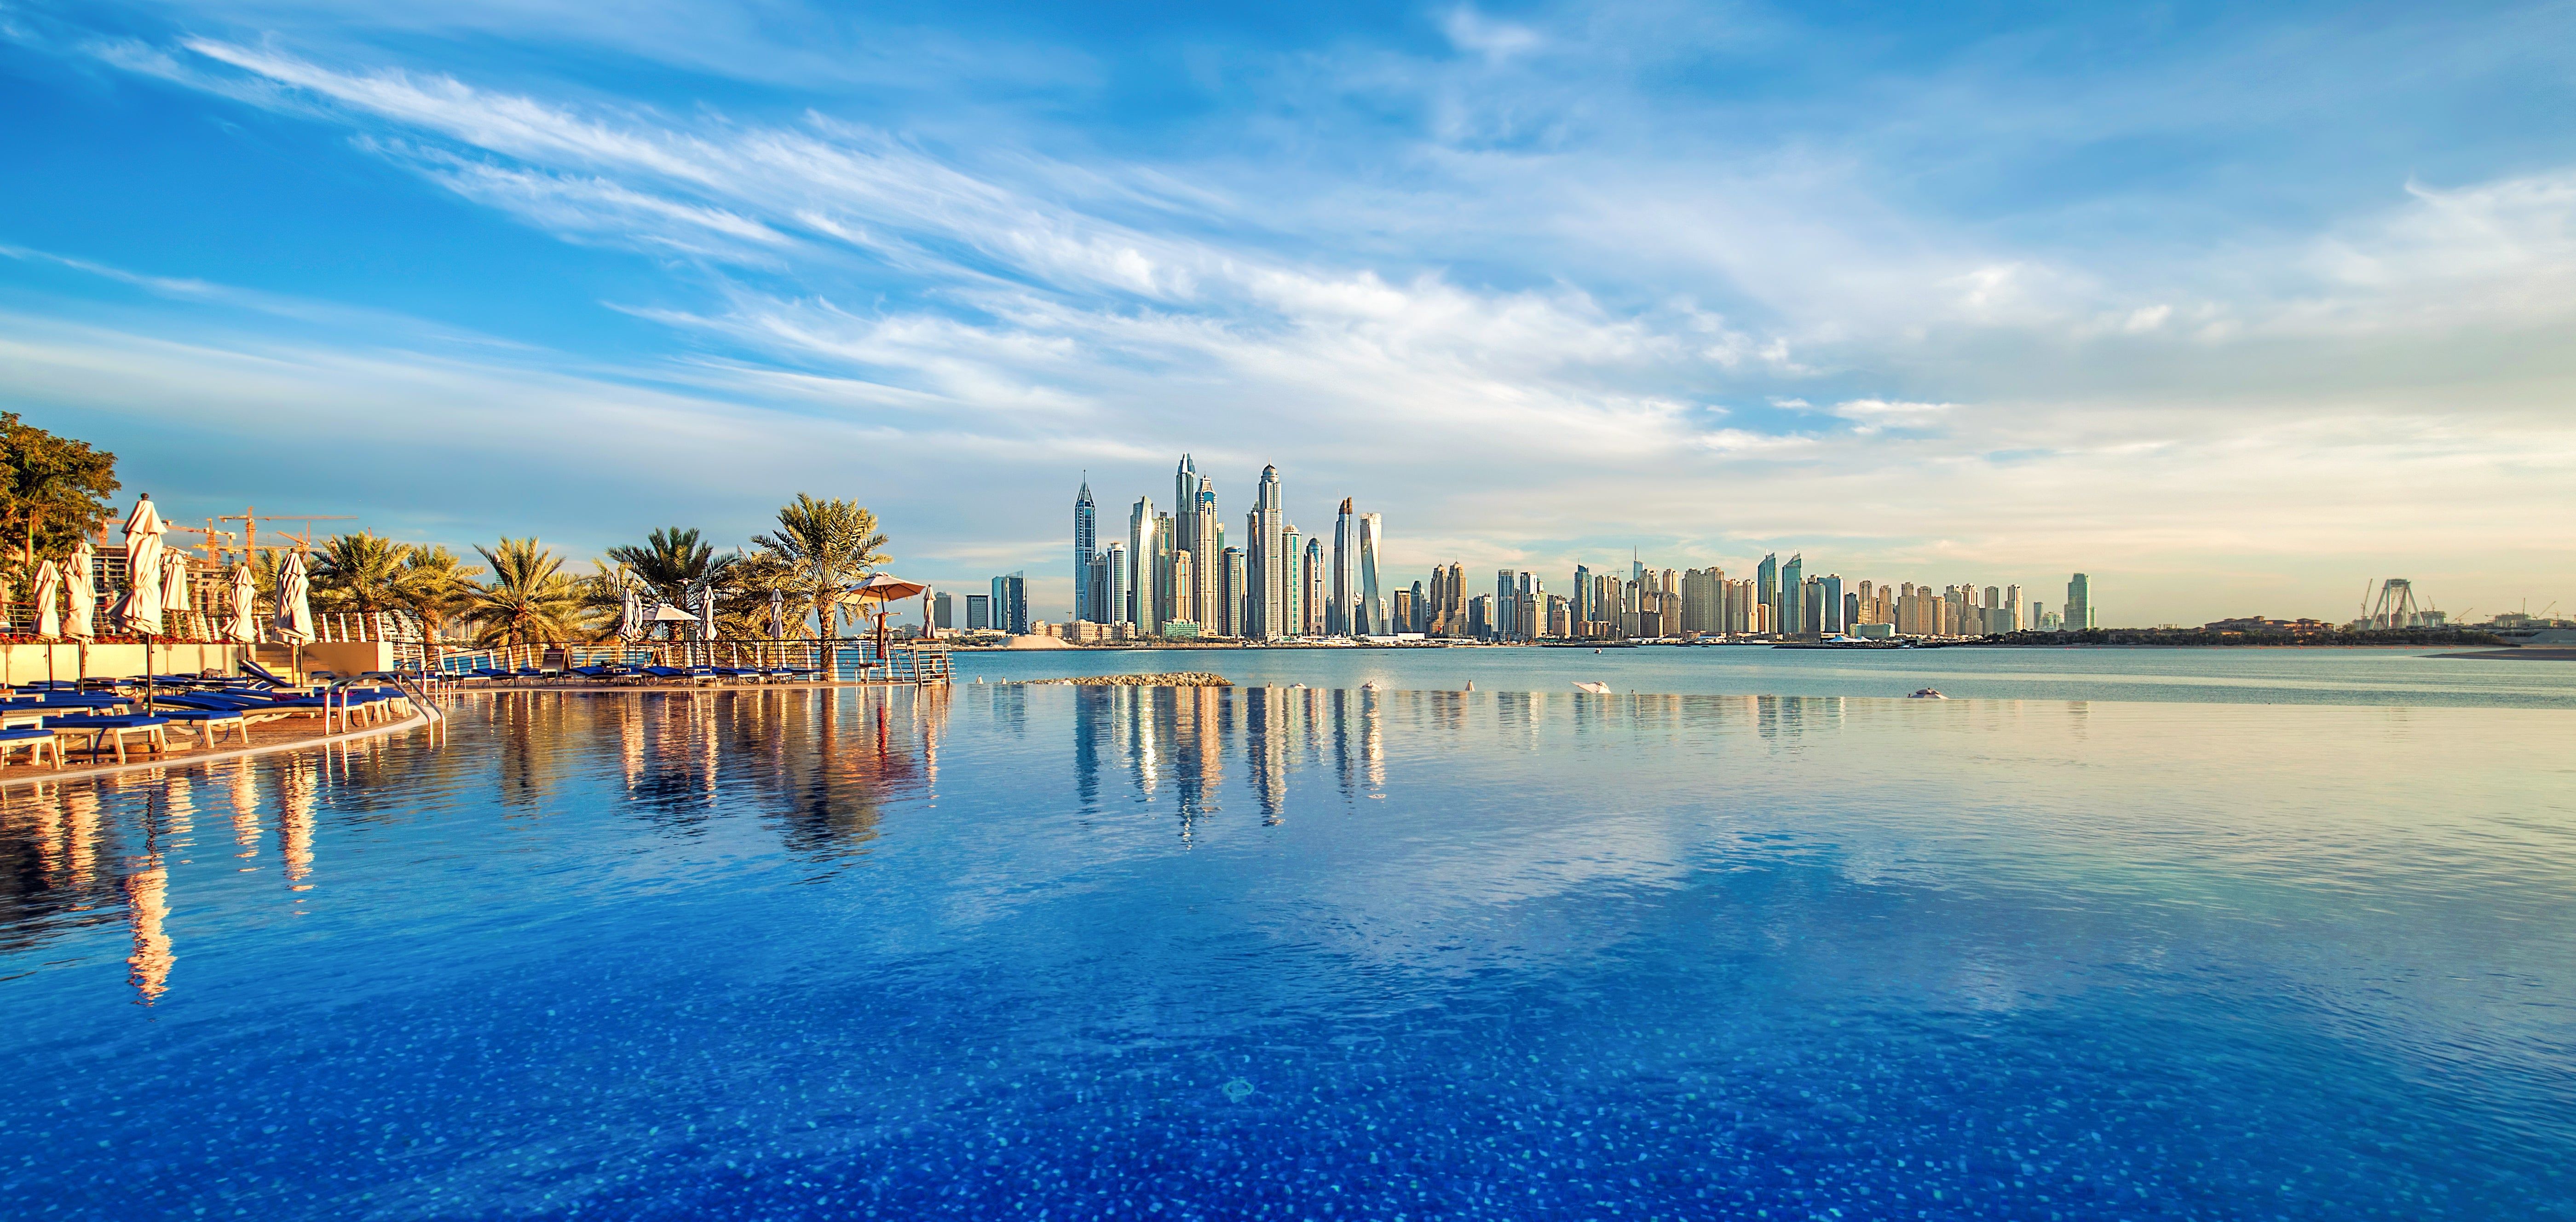 Holidays to Dubai 2023 from £513 loveholidays